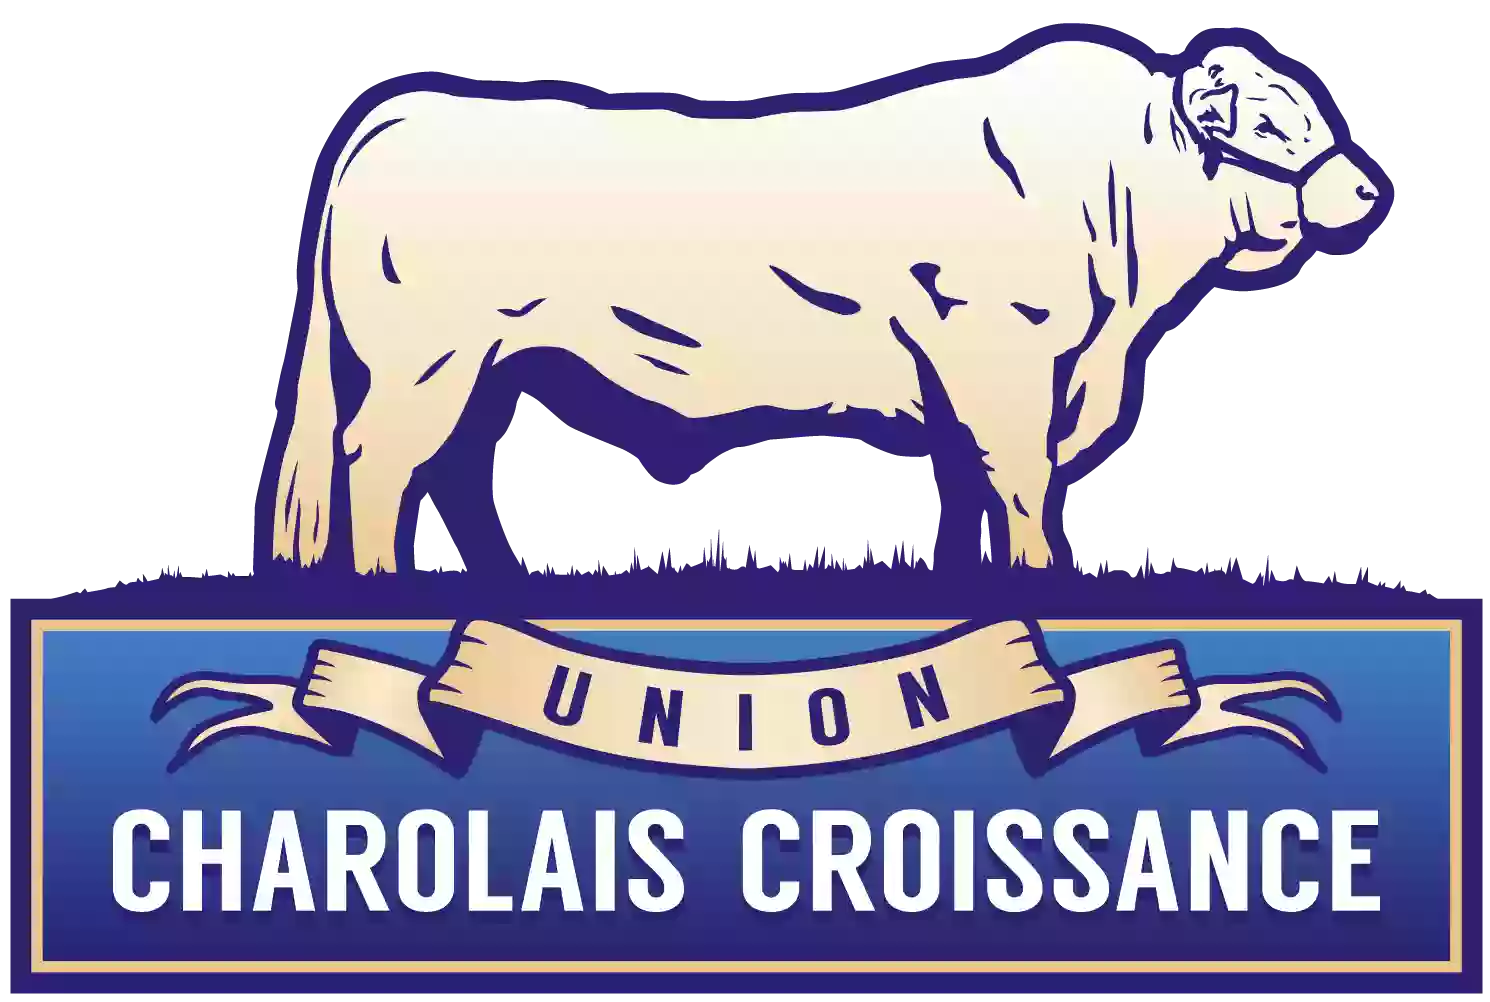 Union Charolais Croissance